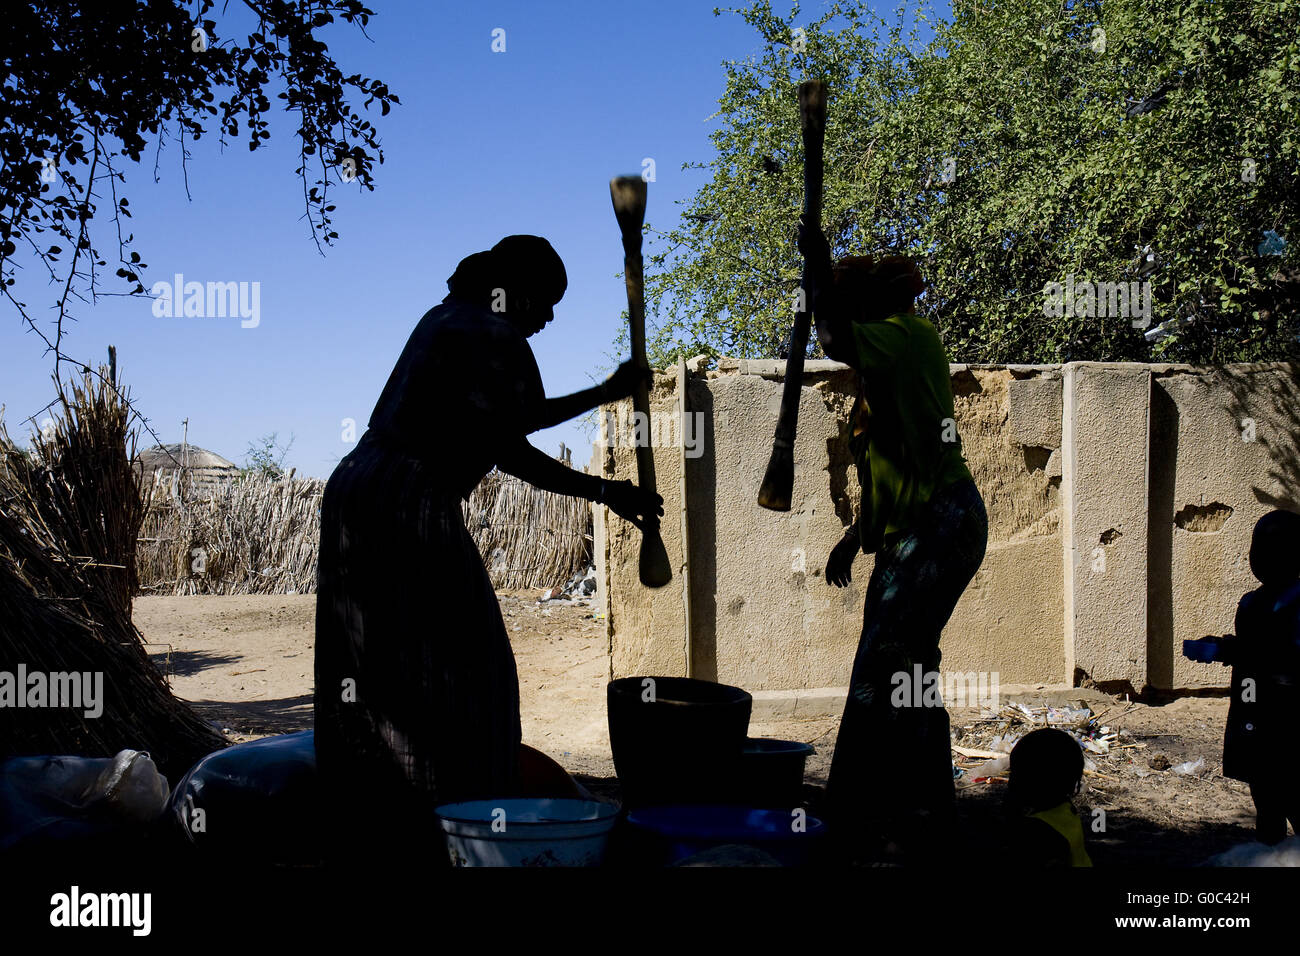 Femmes qui moudront millet dans des mortiers traditionnels. Ngalwa. Niger Banque D'Images